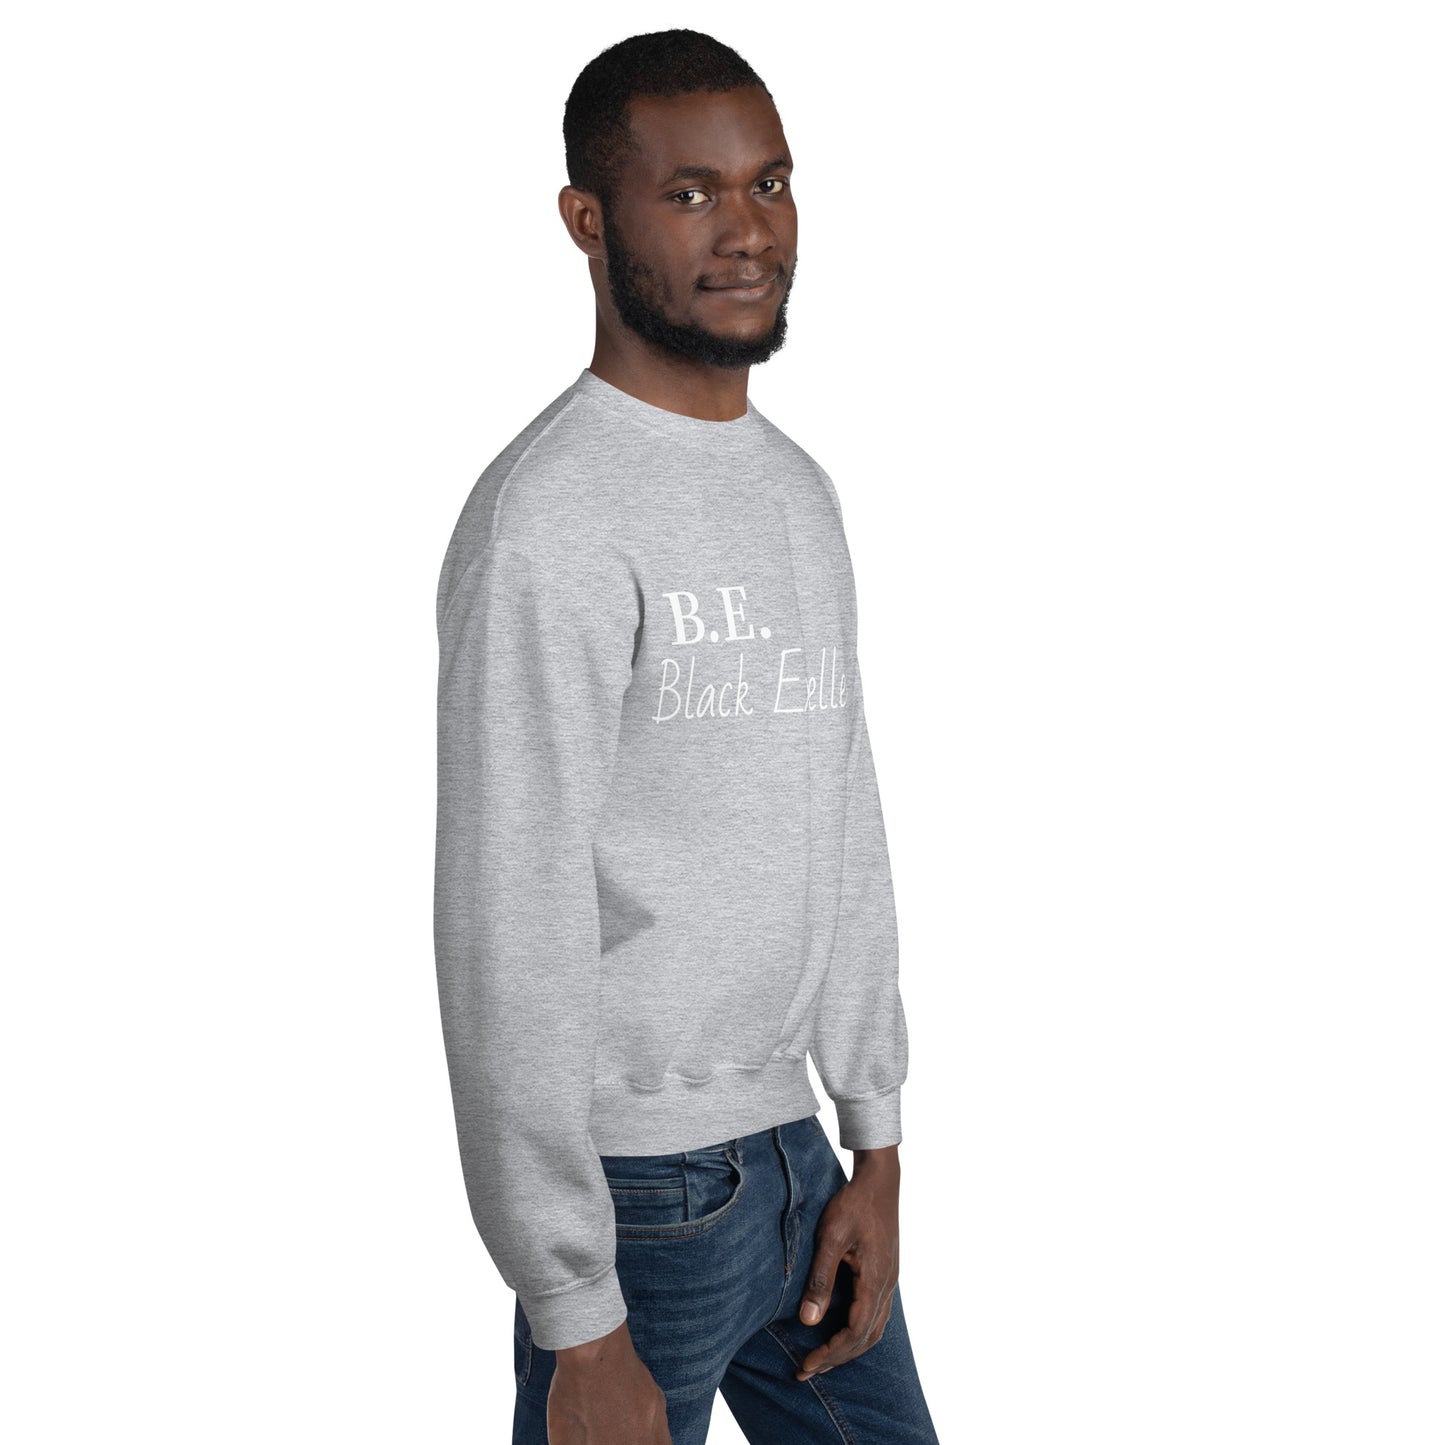 Be Excellent Unisex Sweatshirt